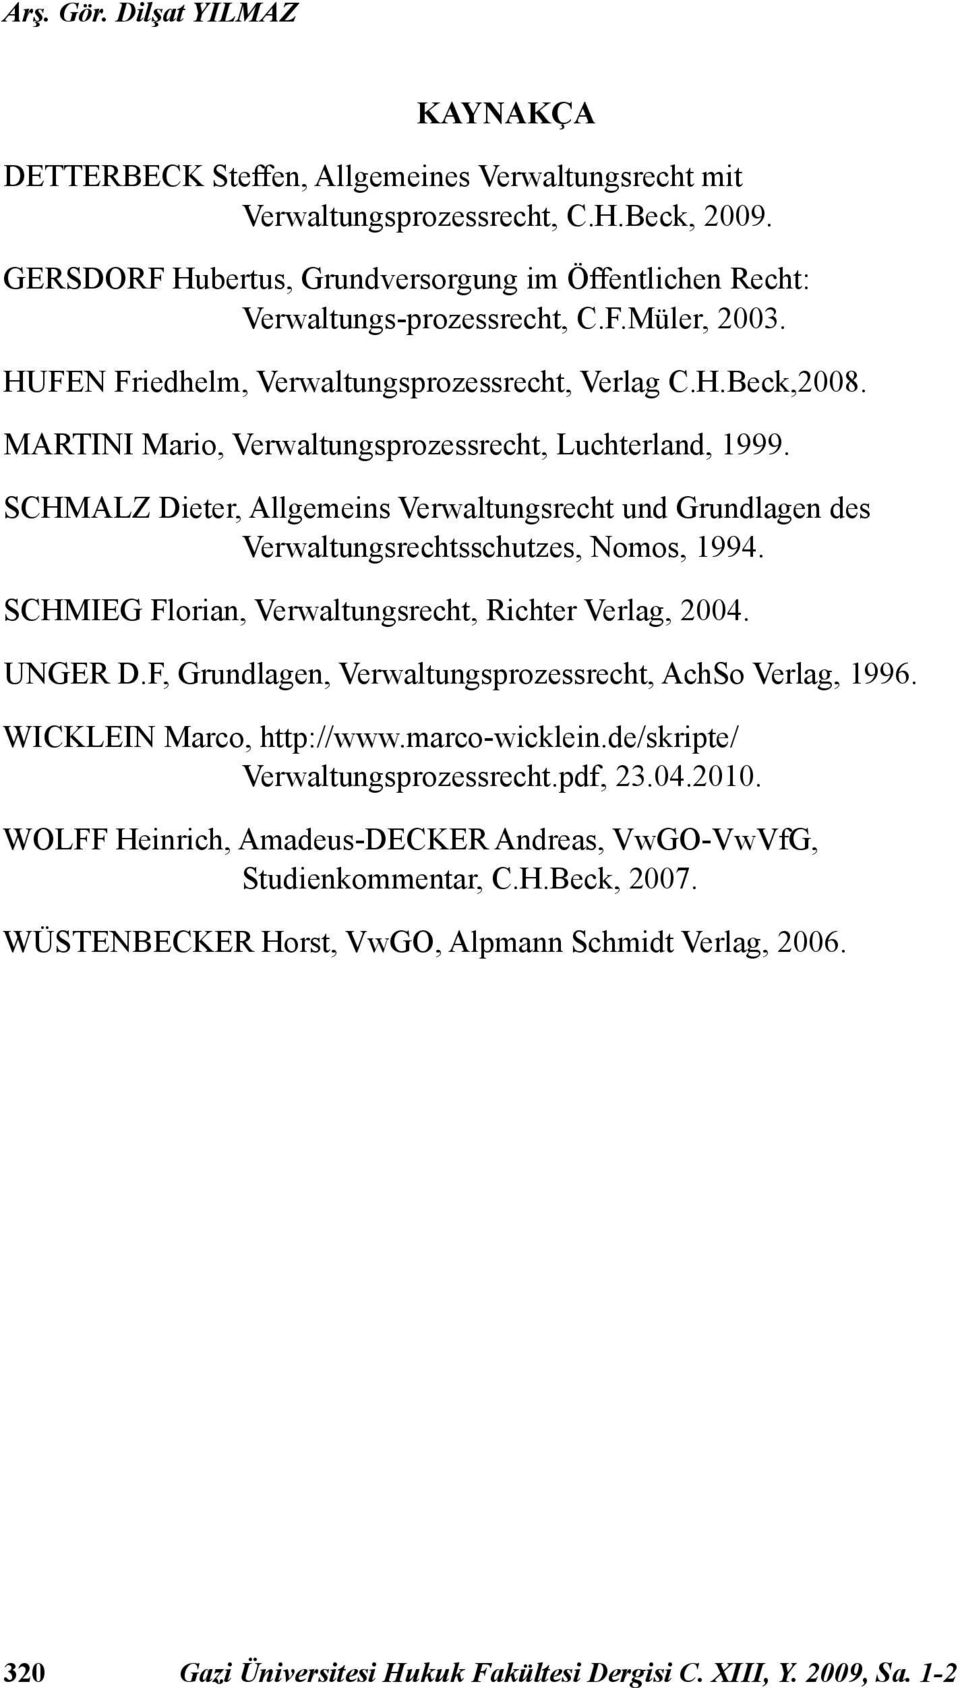 MARTINI Mario, Verwaltungsprozessrecht, Luchterland, 1999. SCHMALZ Dieter, Allgemeins Verwaltungsrecht und Grundlagen des Verwaltungsrechtsschutzes, Nomos, 1994.